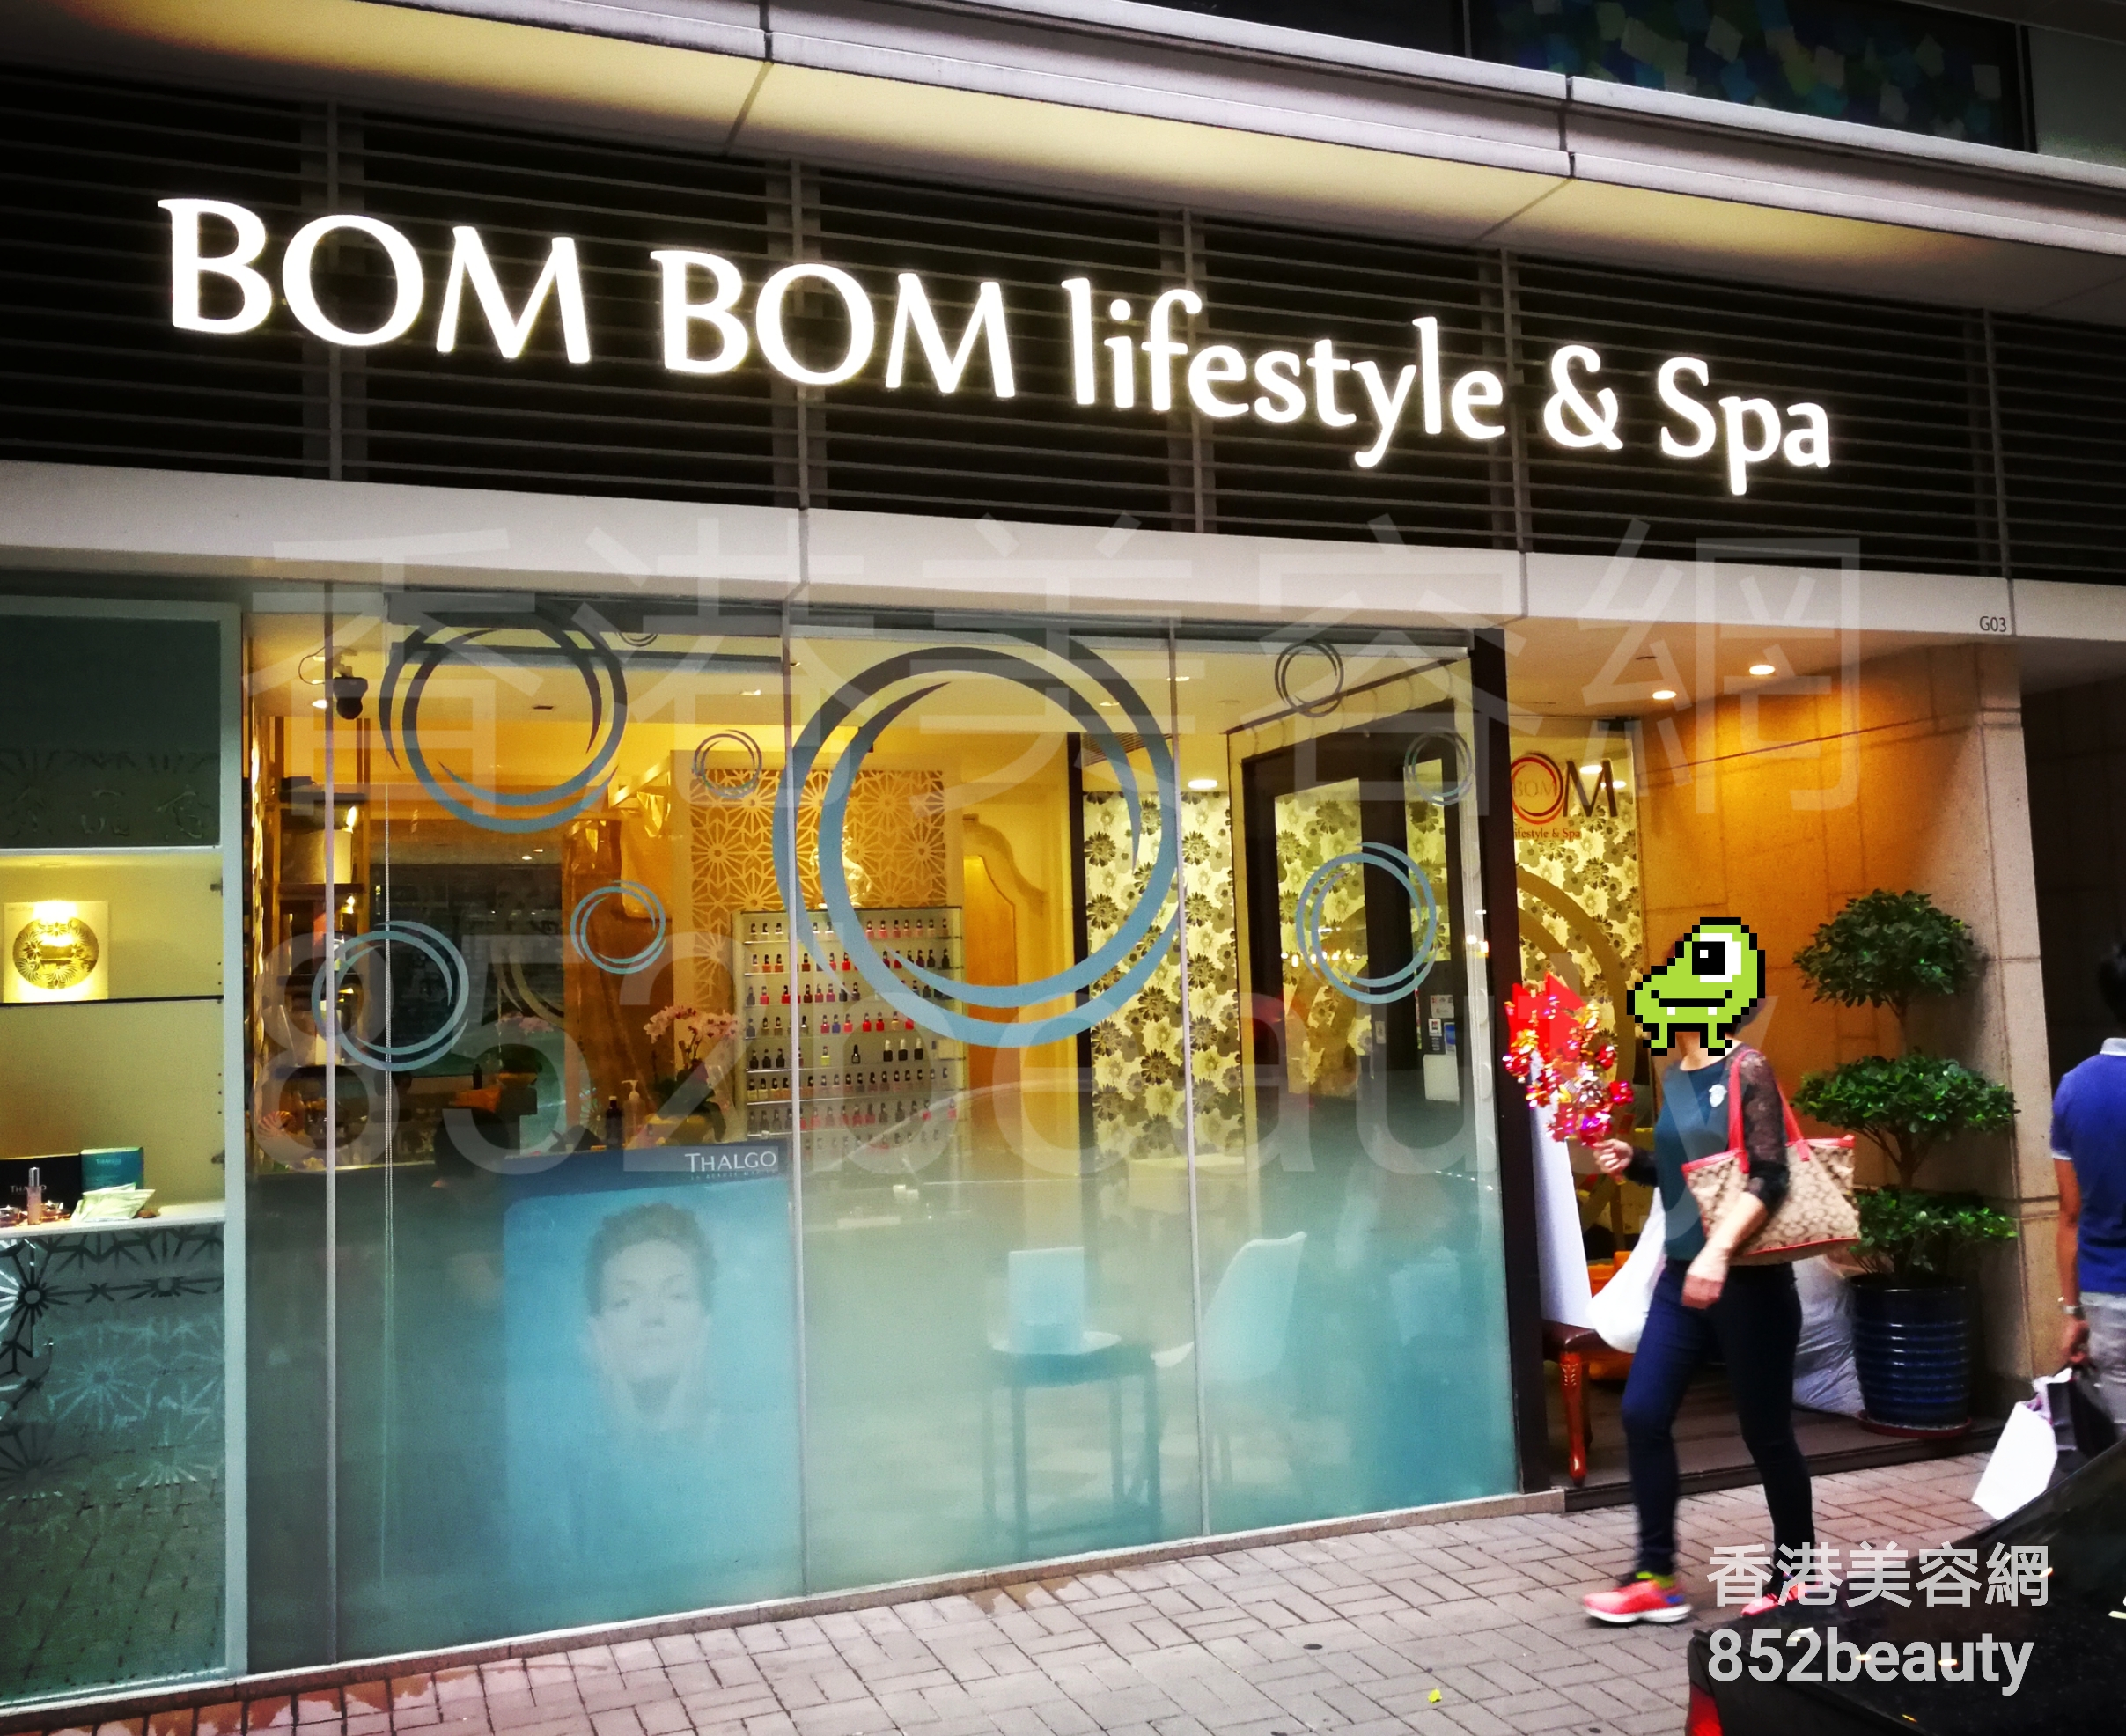 : BOM BOM lifestyle & Spa